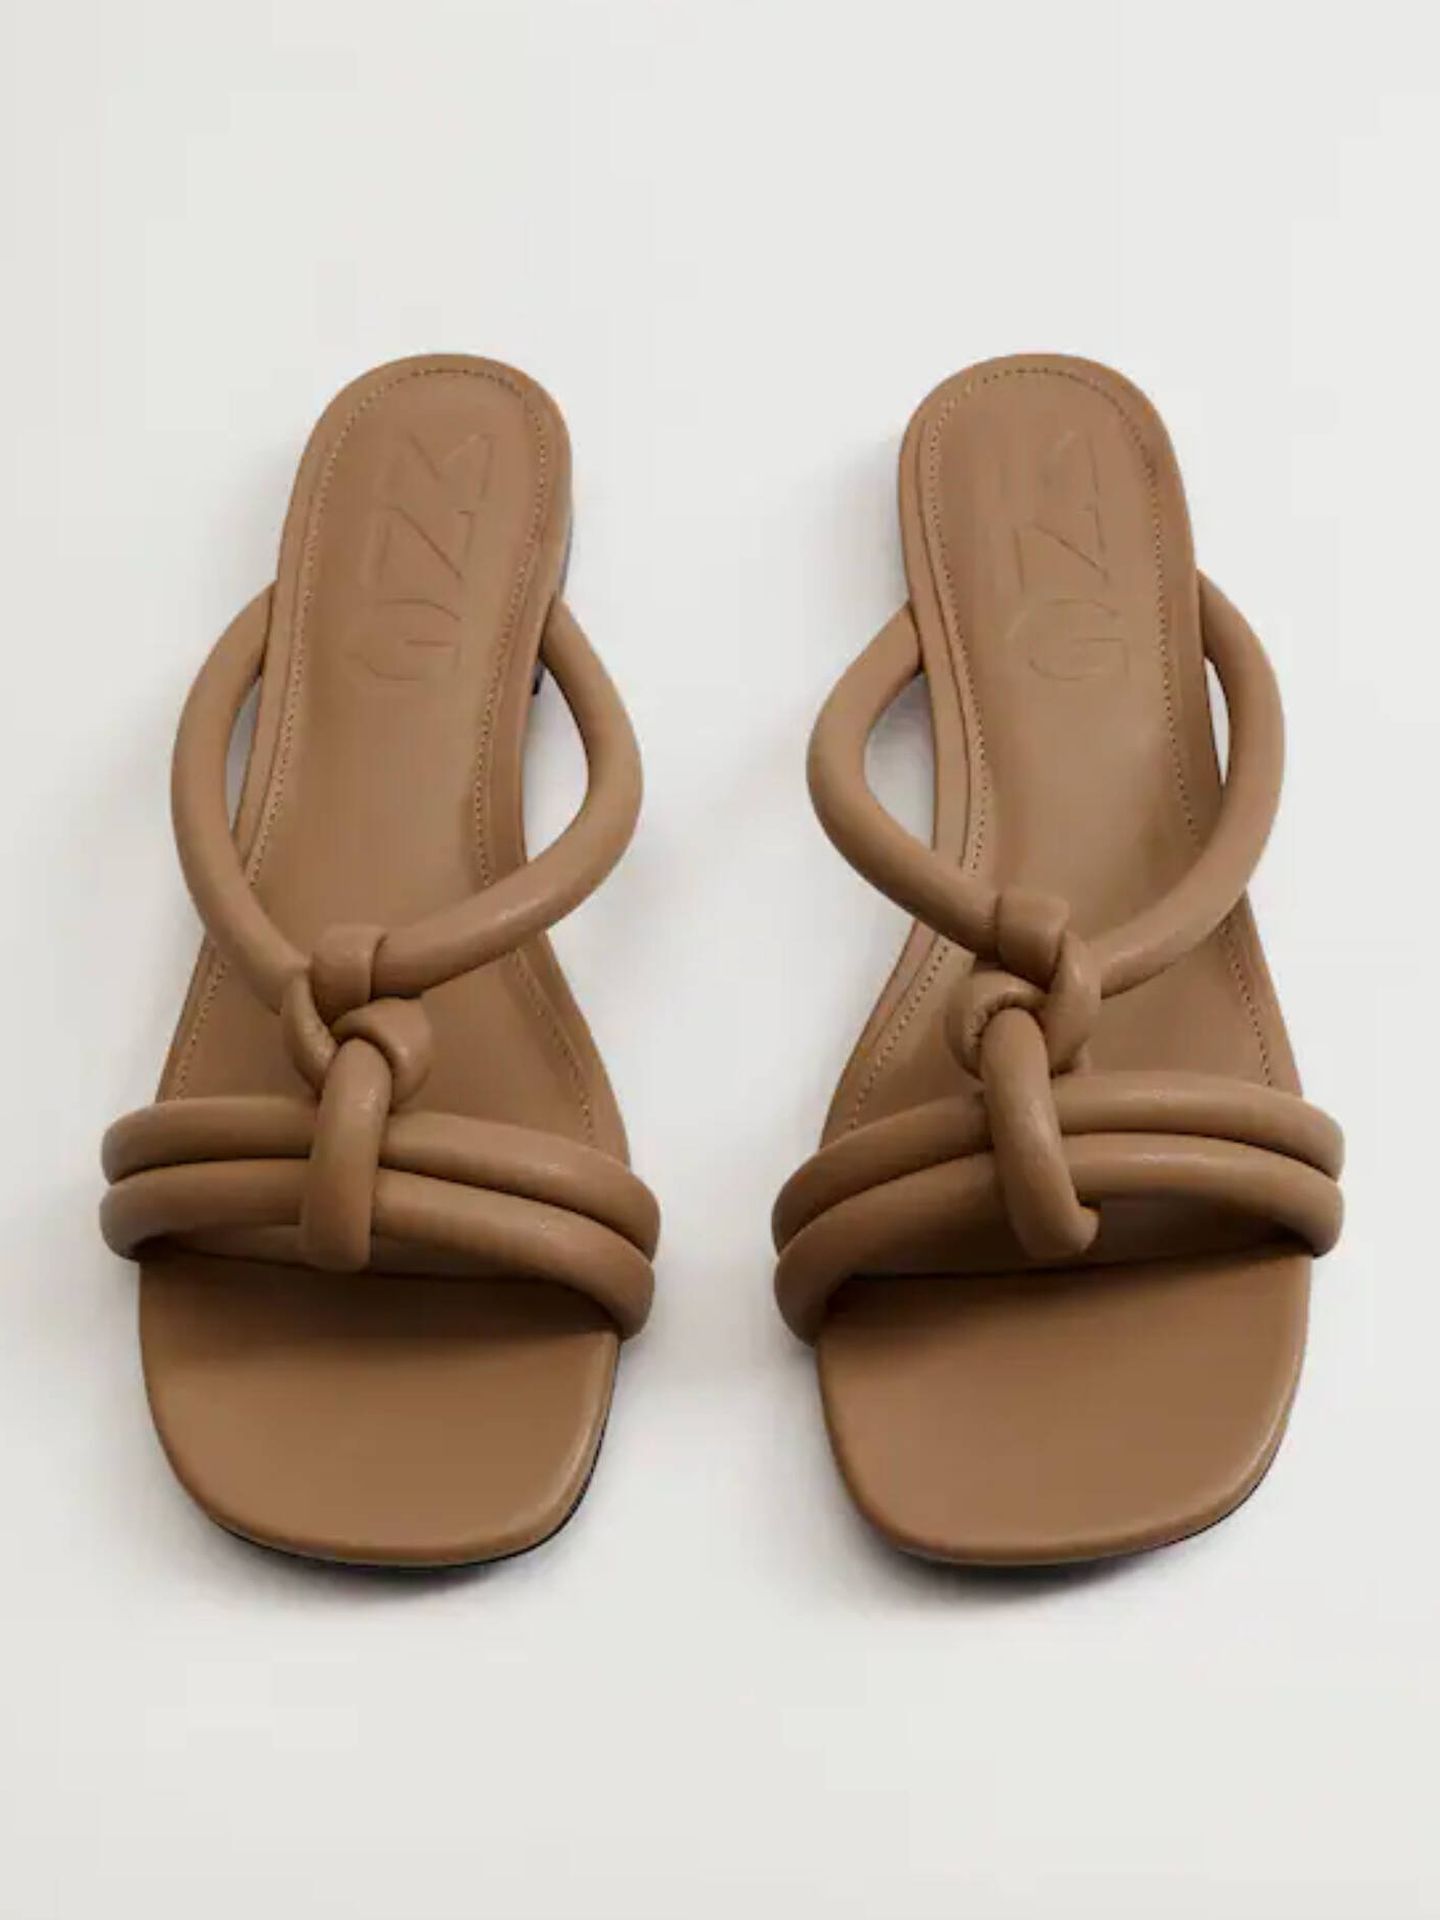 Sandalias planas y cómodas para comprar en rebajas. (Mango/Cortesía)